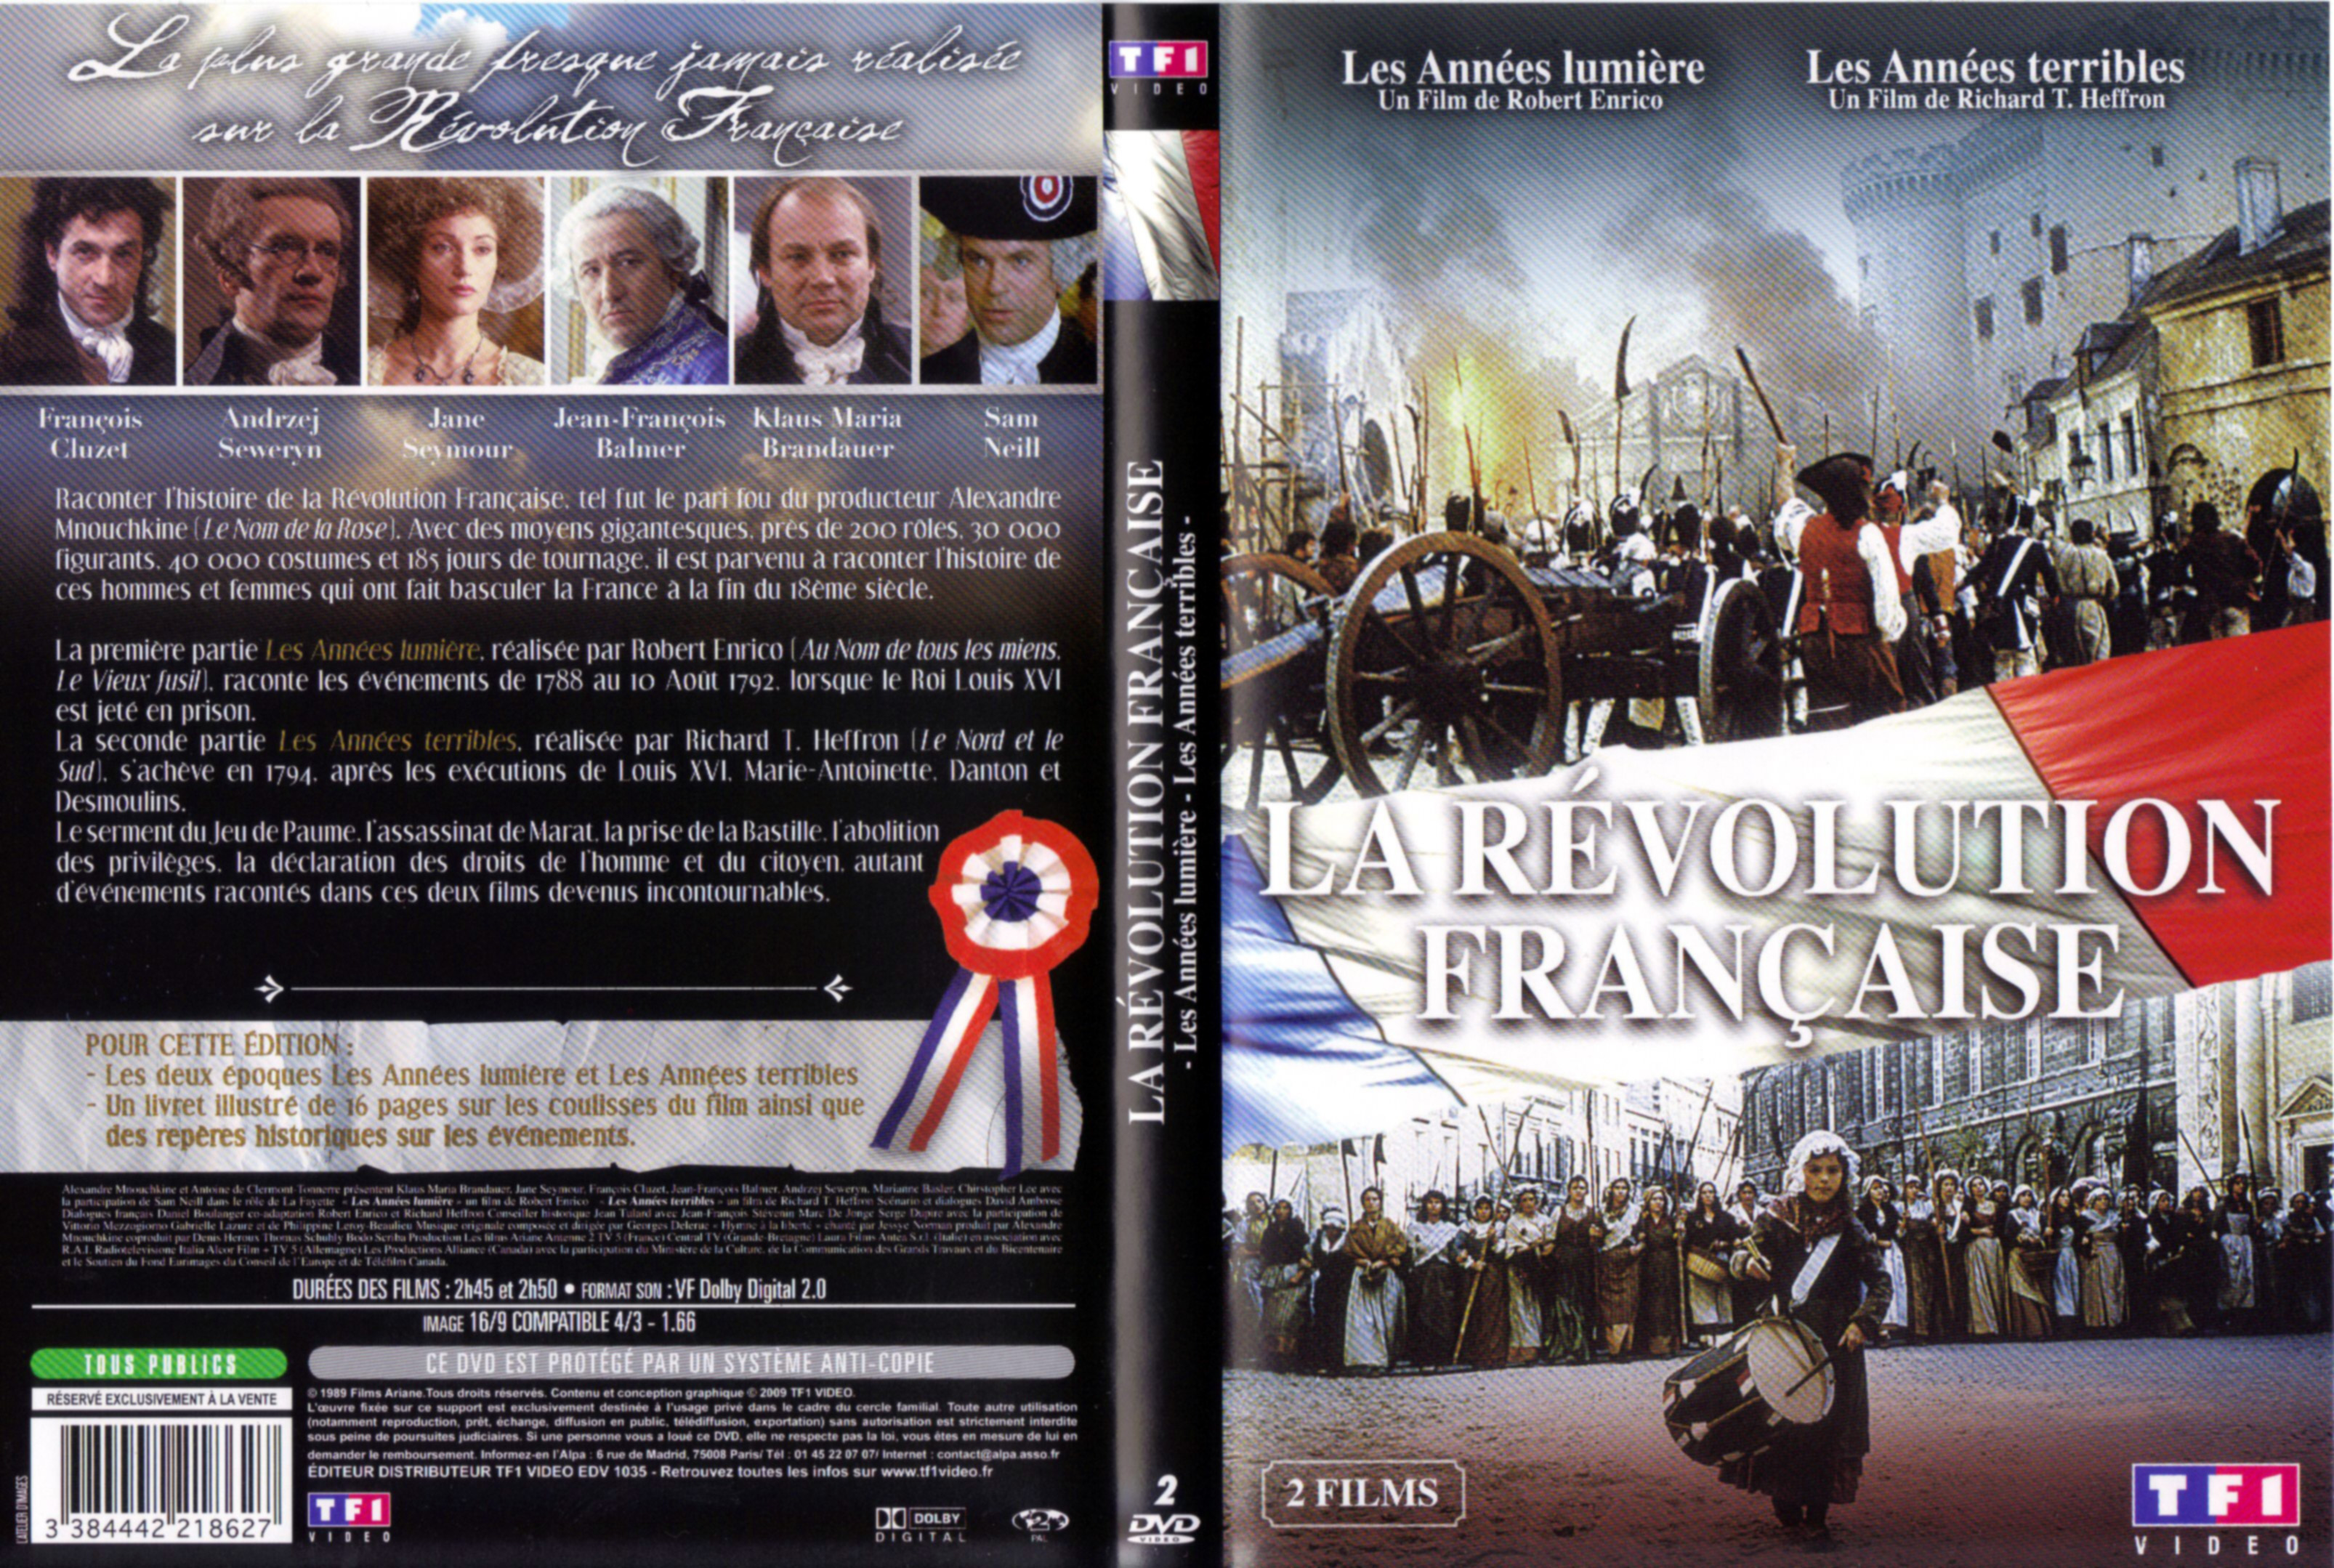 Jaquette DVD La rvolution francaise part 1 et 2